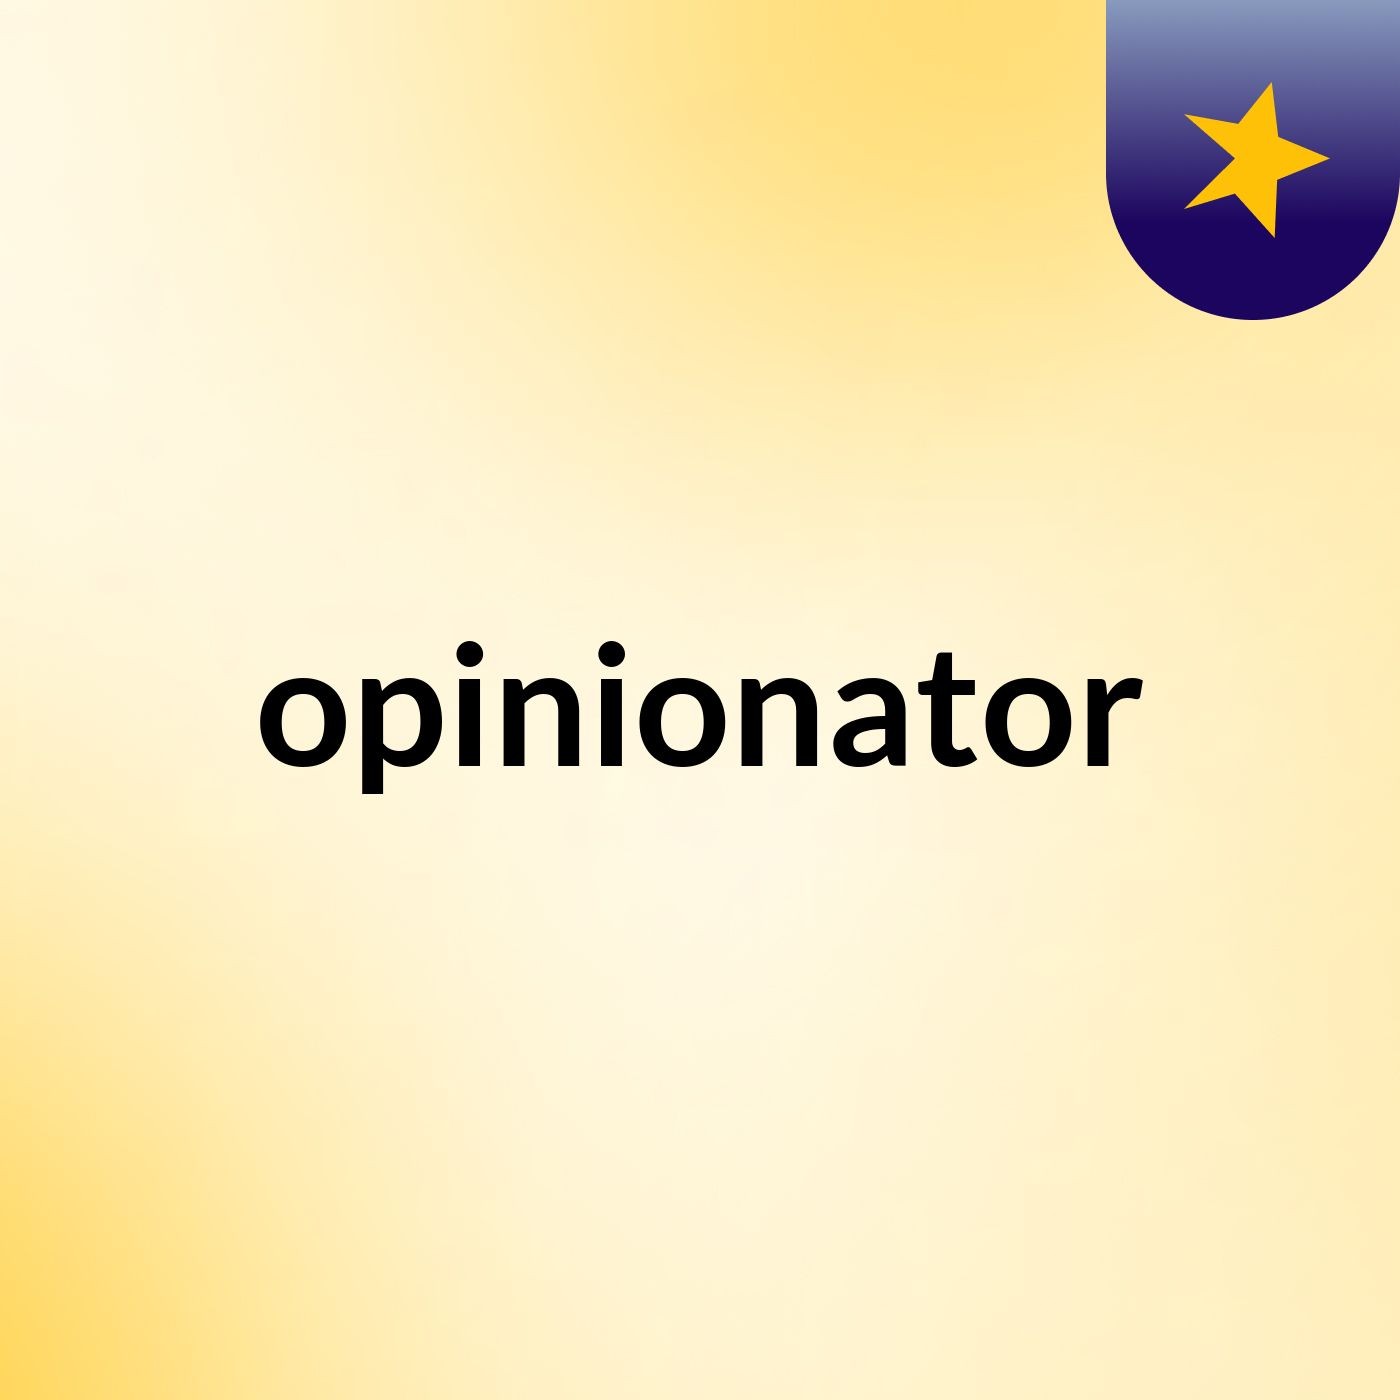 opinionator